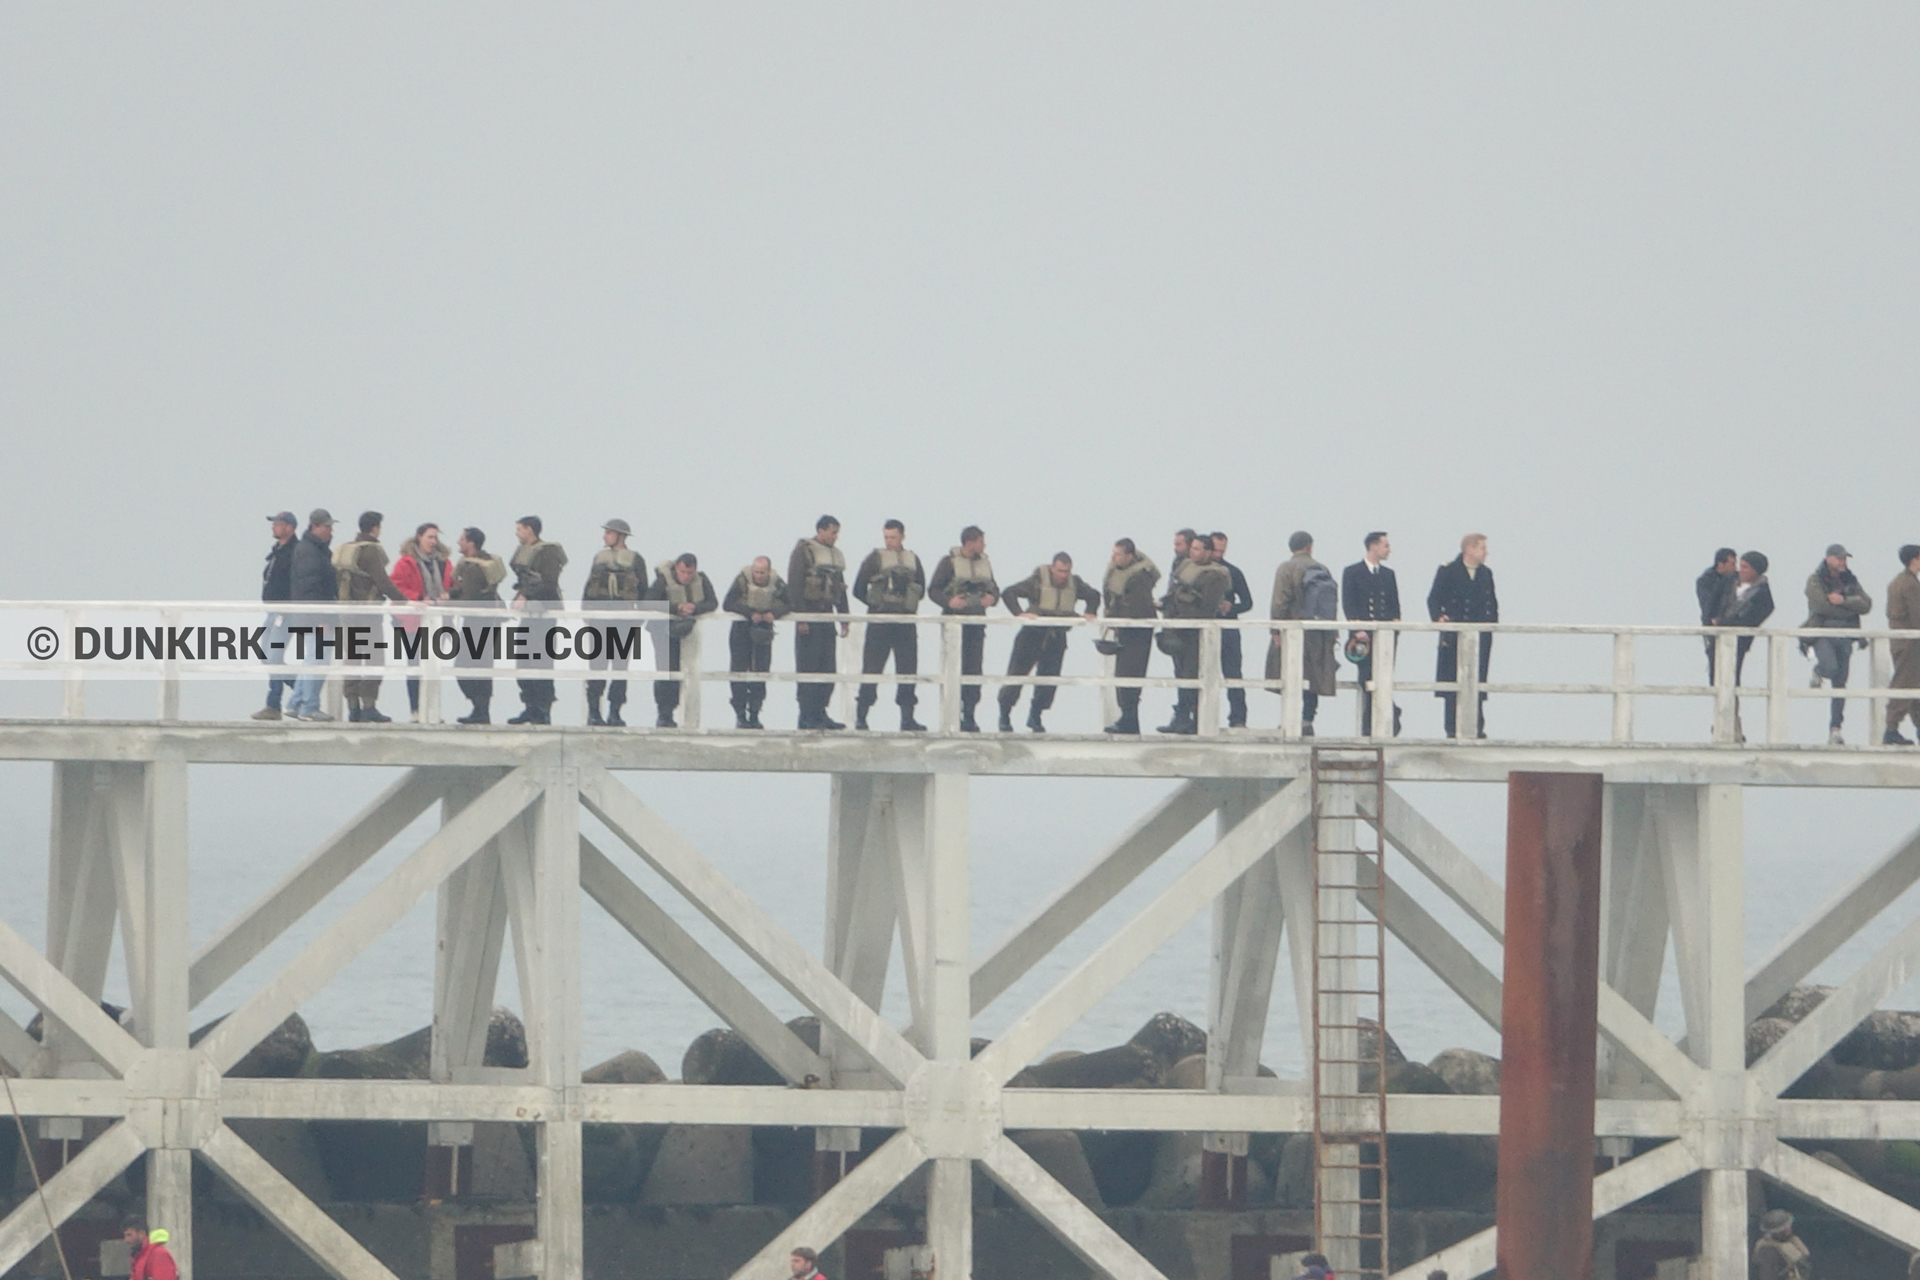 Photo avec acteur, ciel gris, figurants, jetée EST, Kenneth Branagh, équipe technique,  des dessous du Film Dunkerque de Nolan